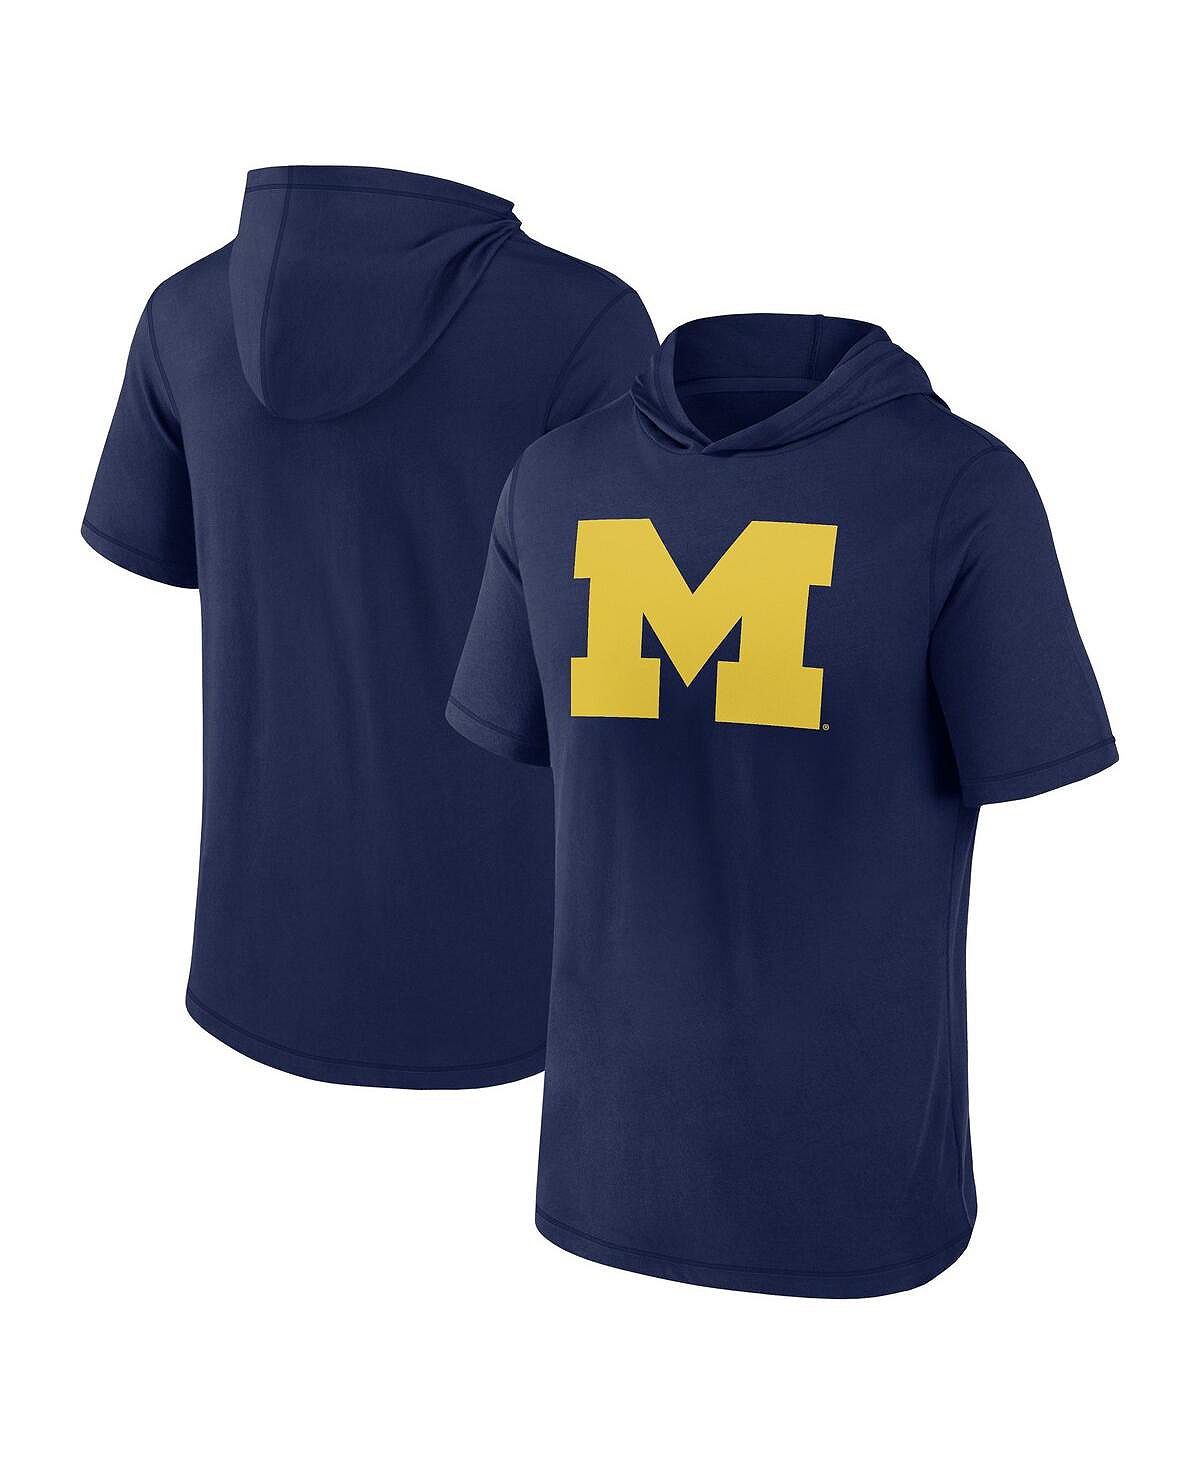 Мужская темно-синяя футболка с капюшоном с логотипом Michigan Wolverines Primary Fanatics